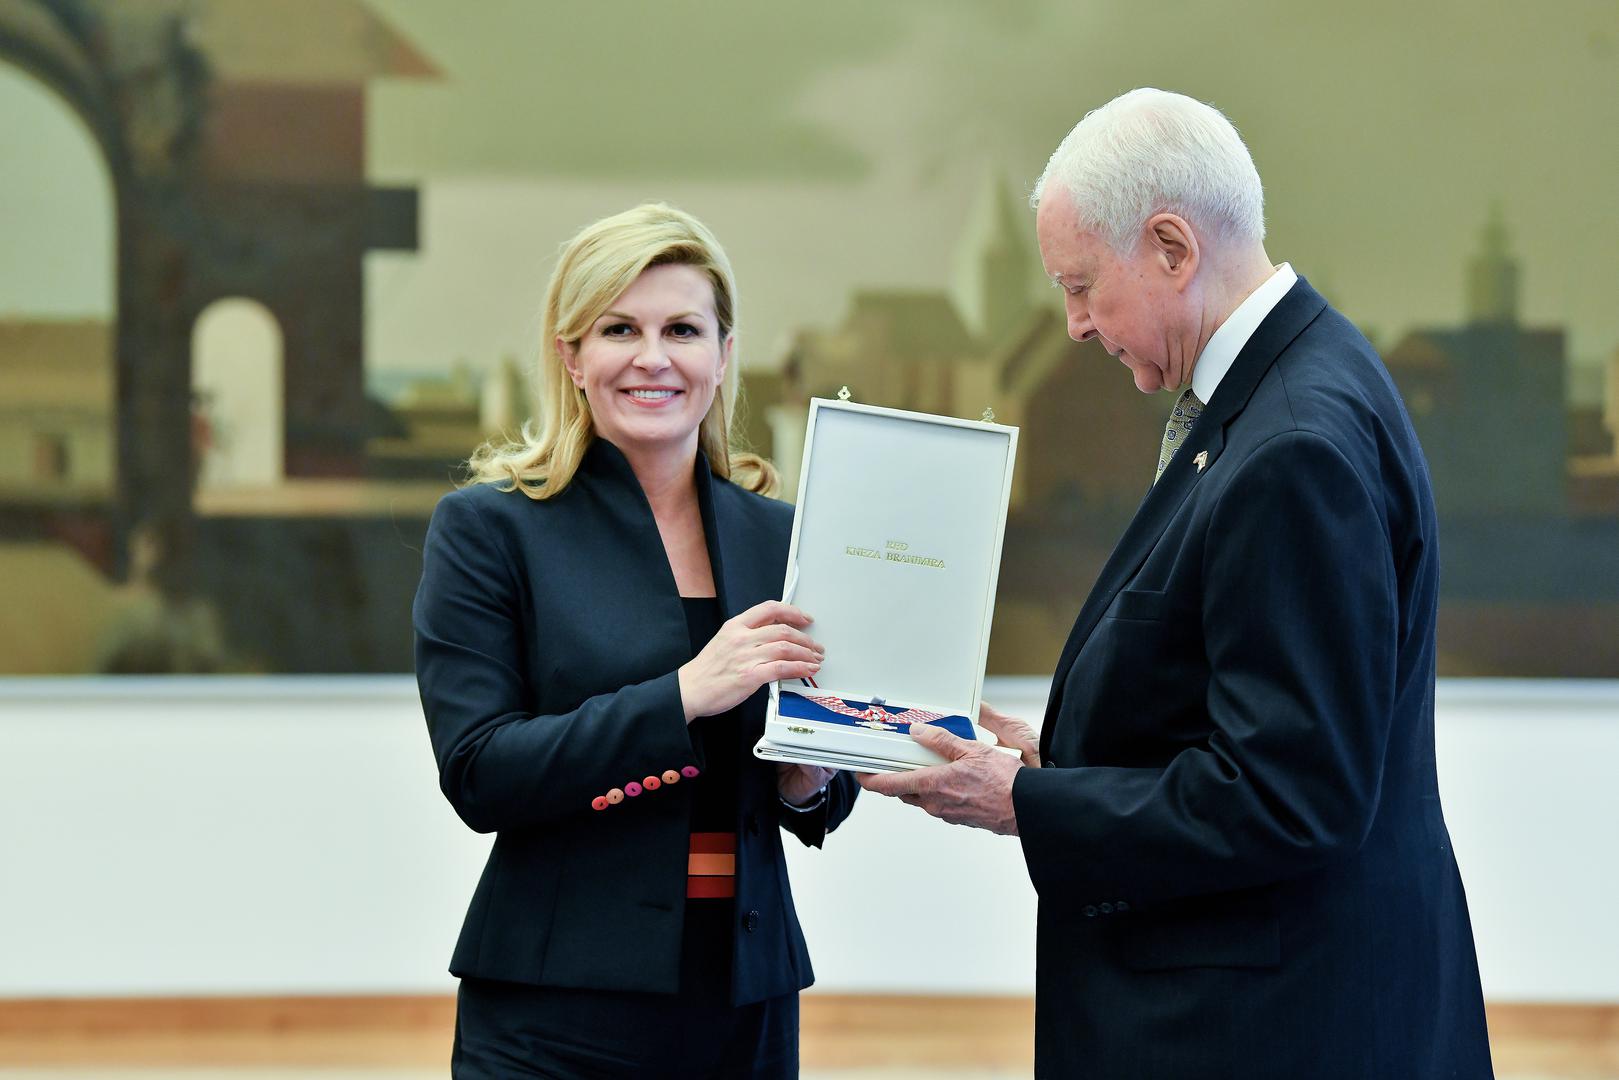 Predsjednica Kolinda Grabar-Kitarović odlikovala je senatora za doprinos ugledu Hrvatske u SAD-u.